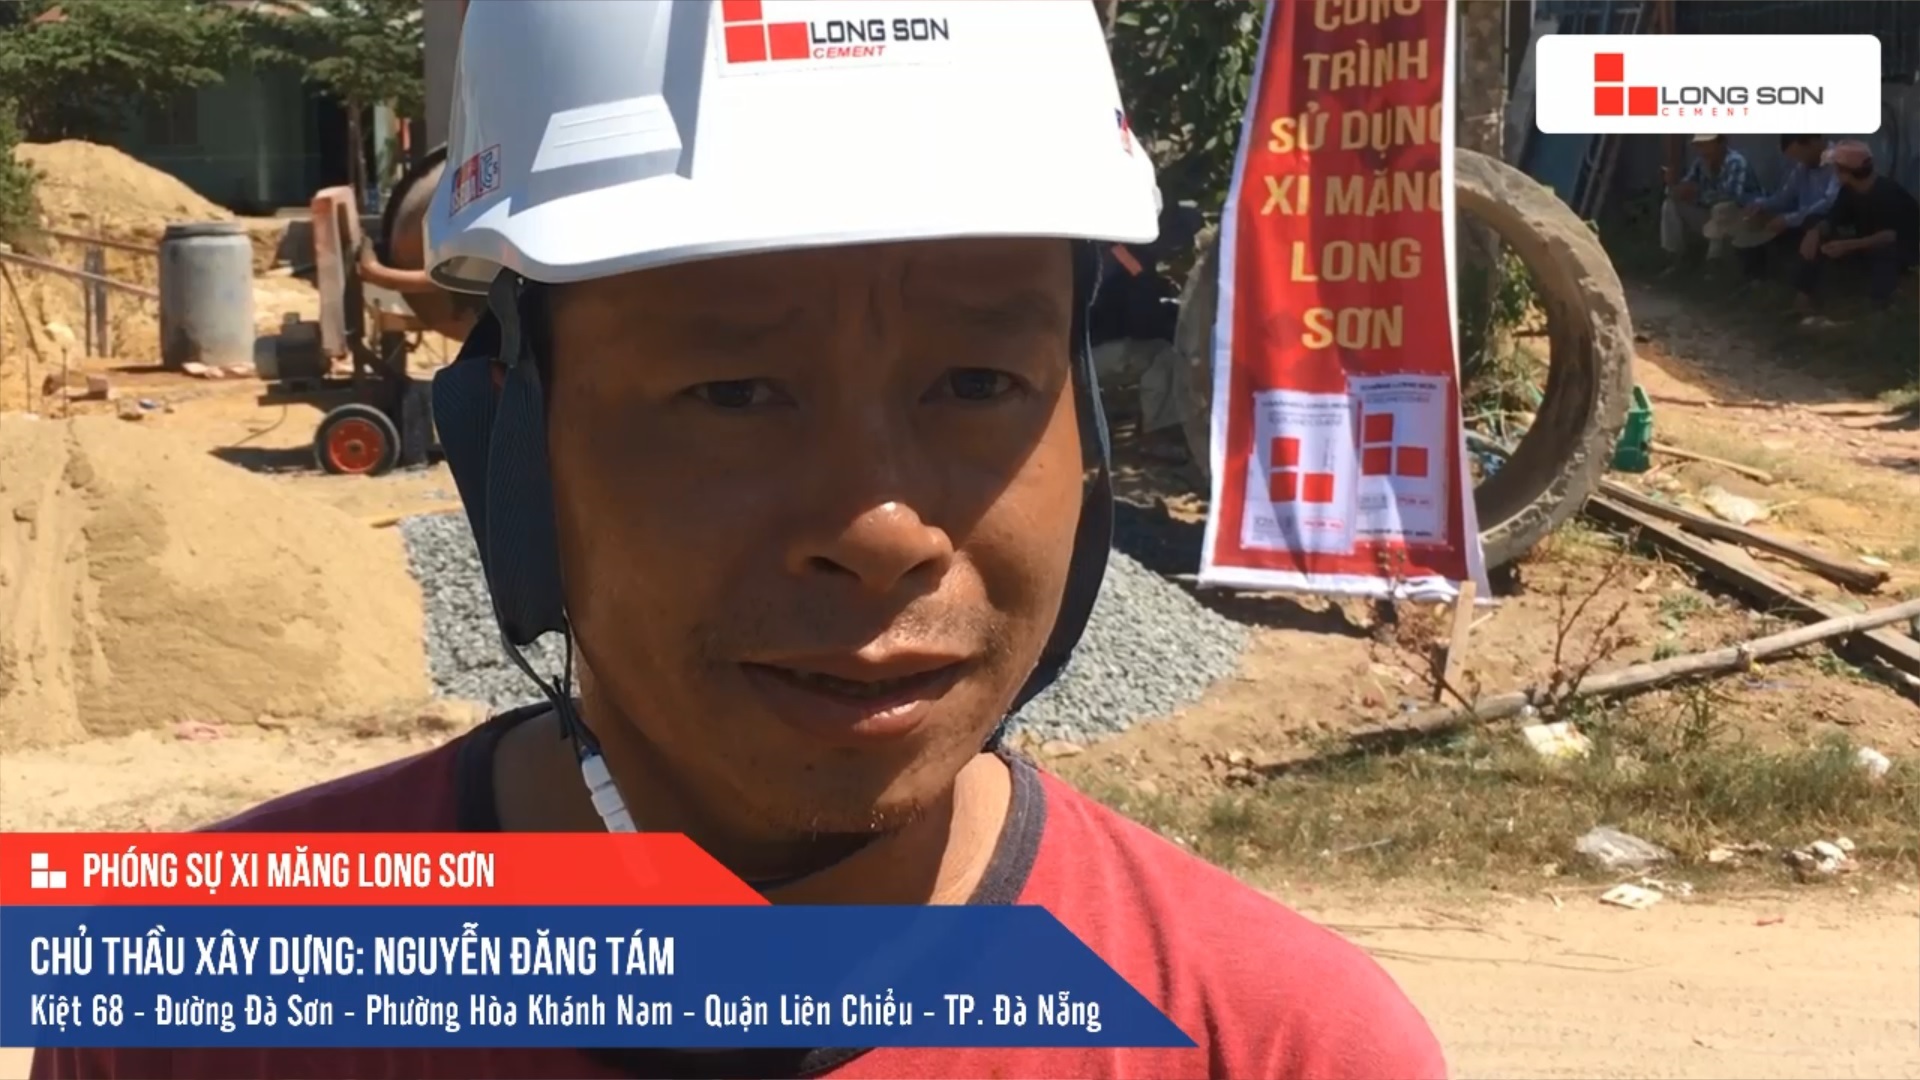 Phóng sự công trình sử dung Xi măng Long Sơn tại Đà Nẵng 17.07.2020